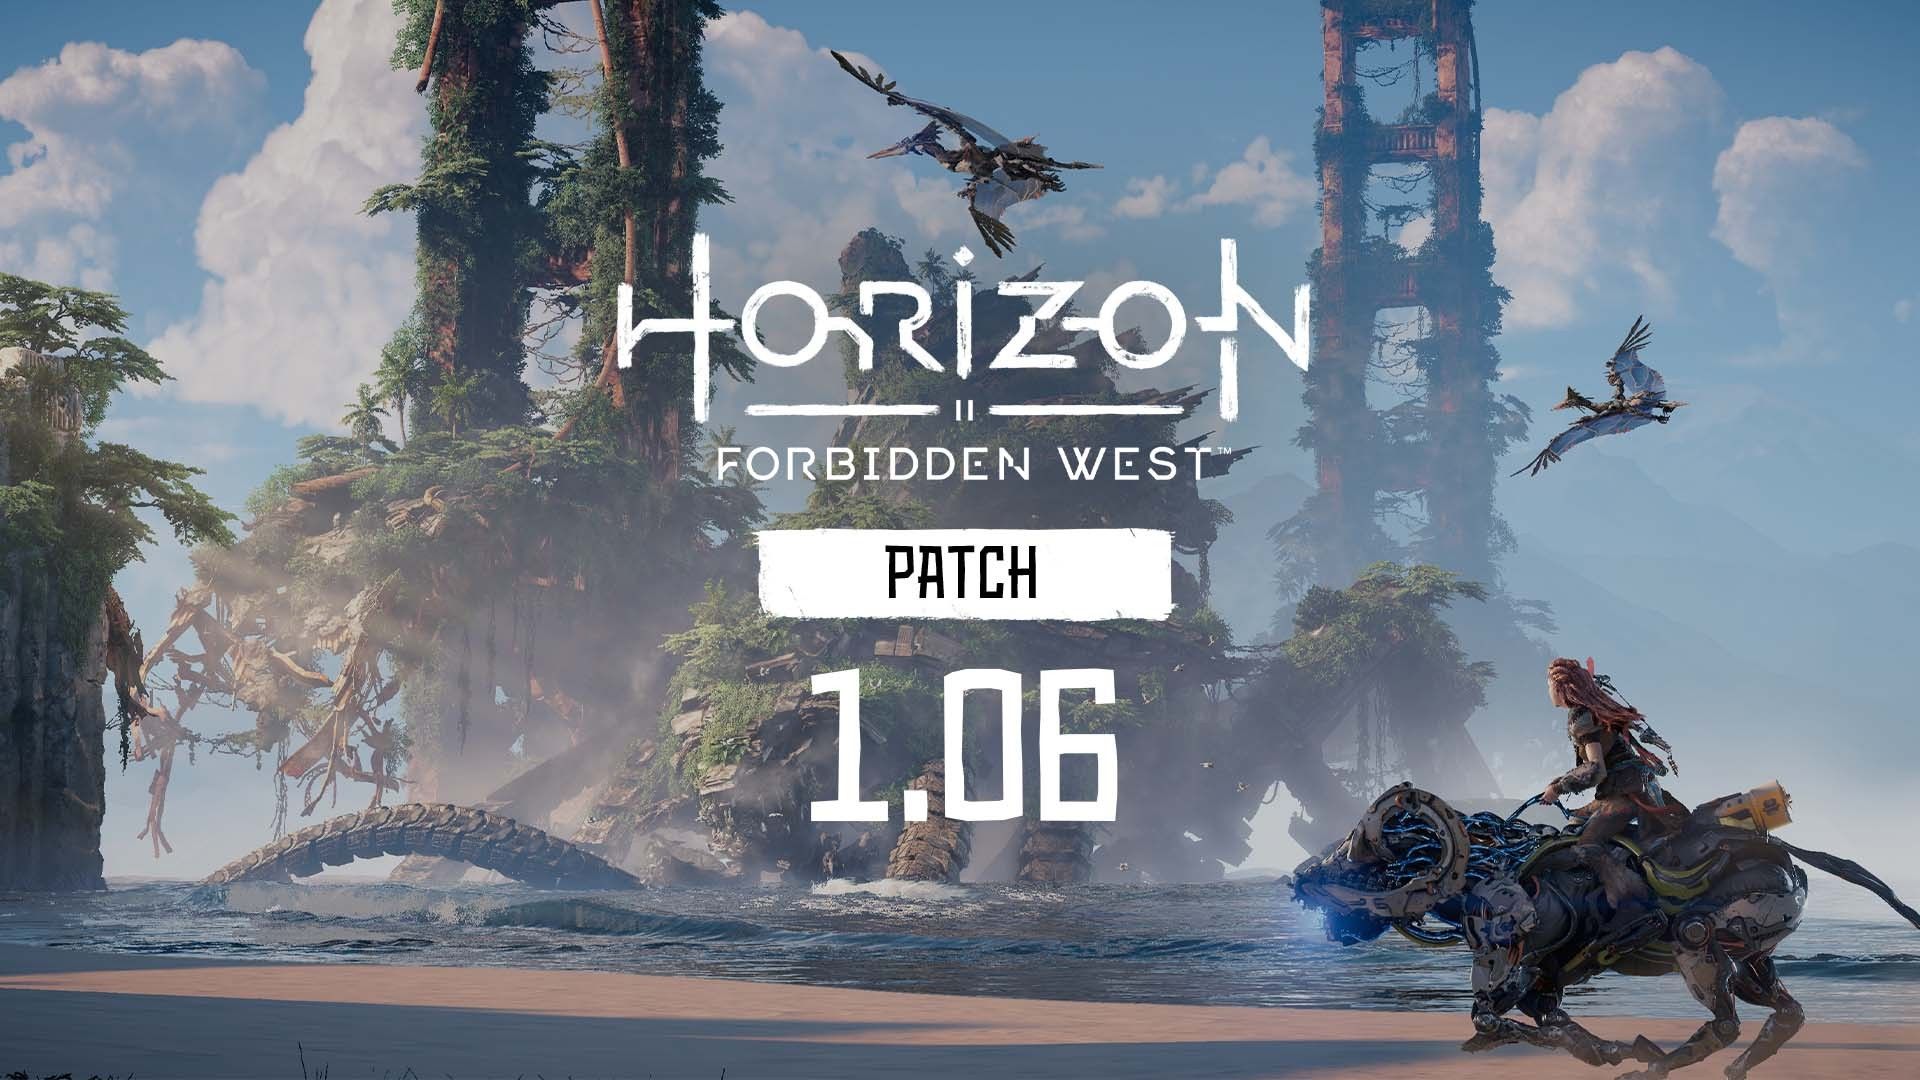 horizon forbidden west pc release date reddit